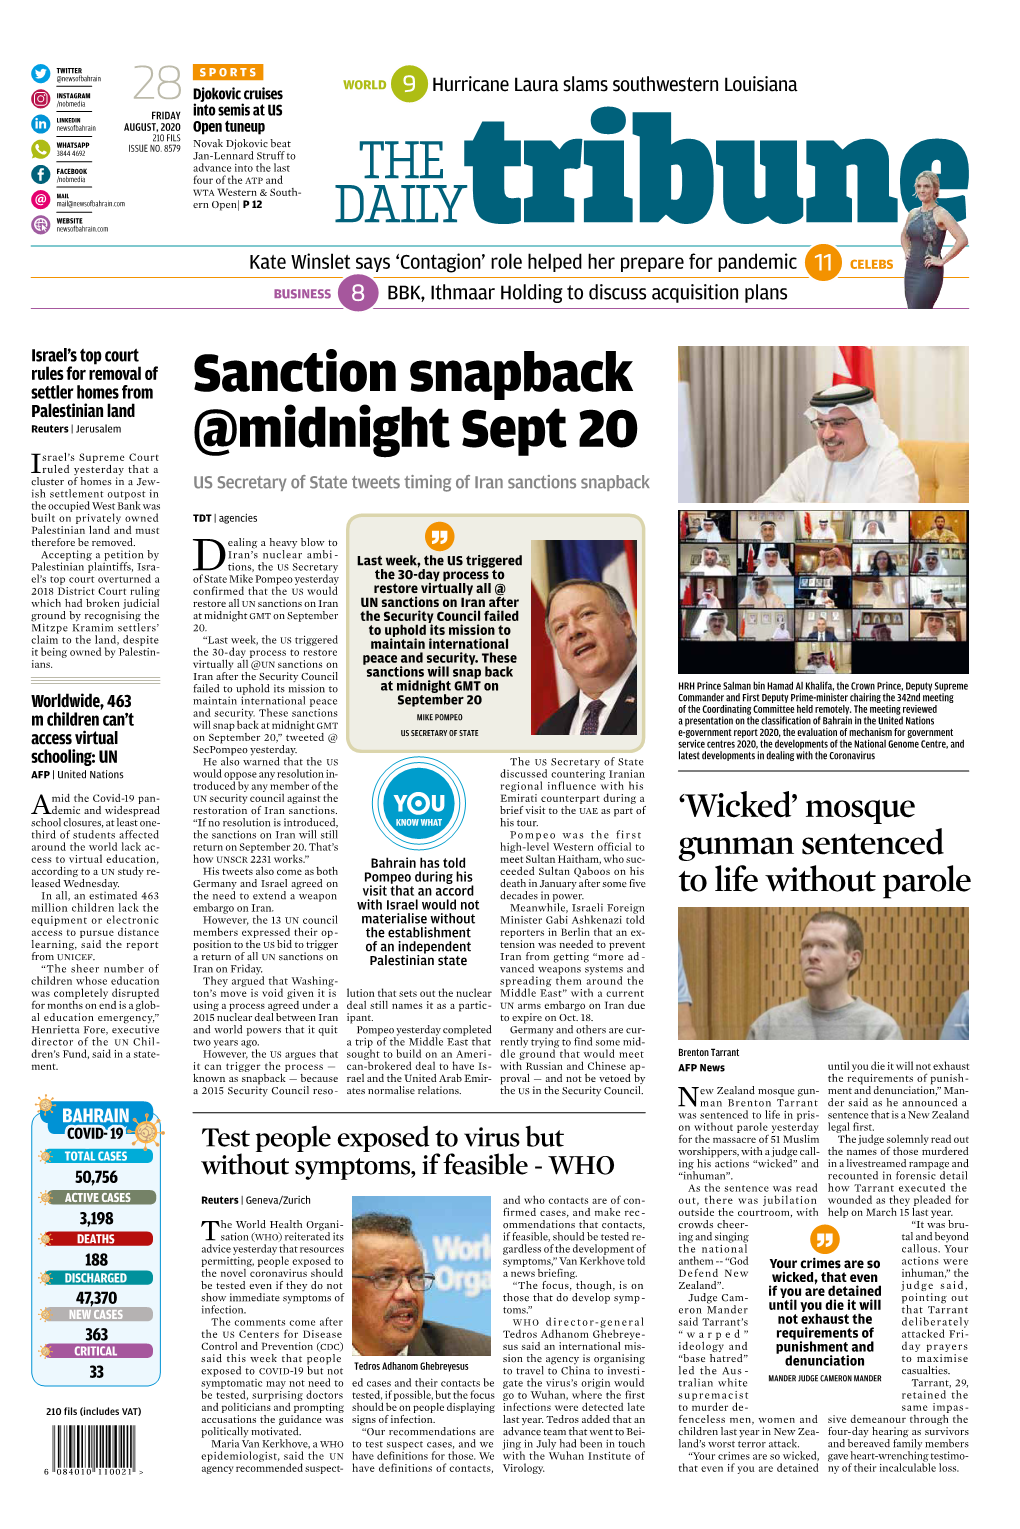 Sanction Snapback @Midnight Sept 20